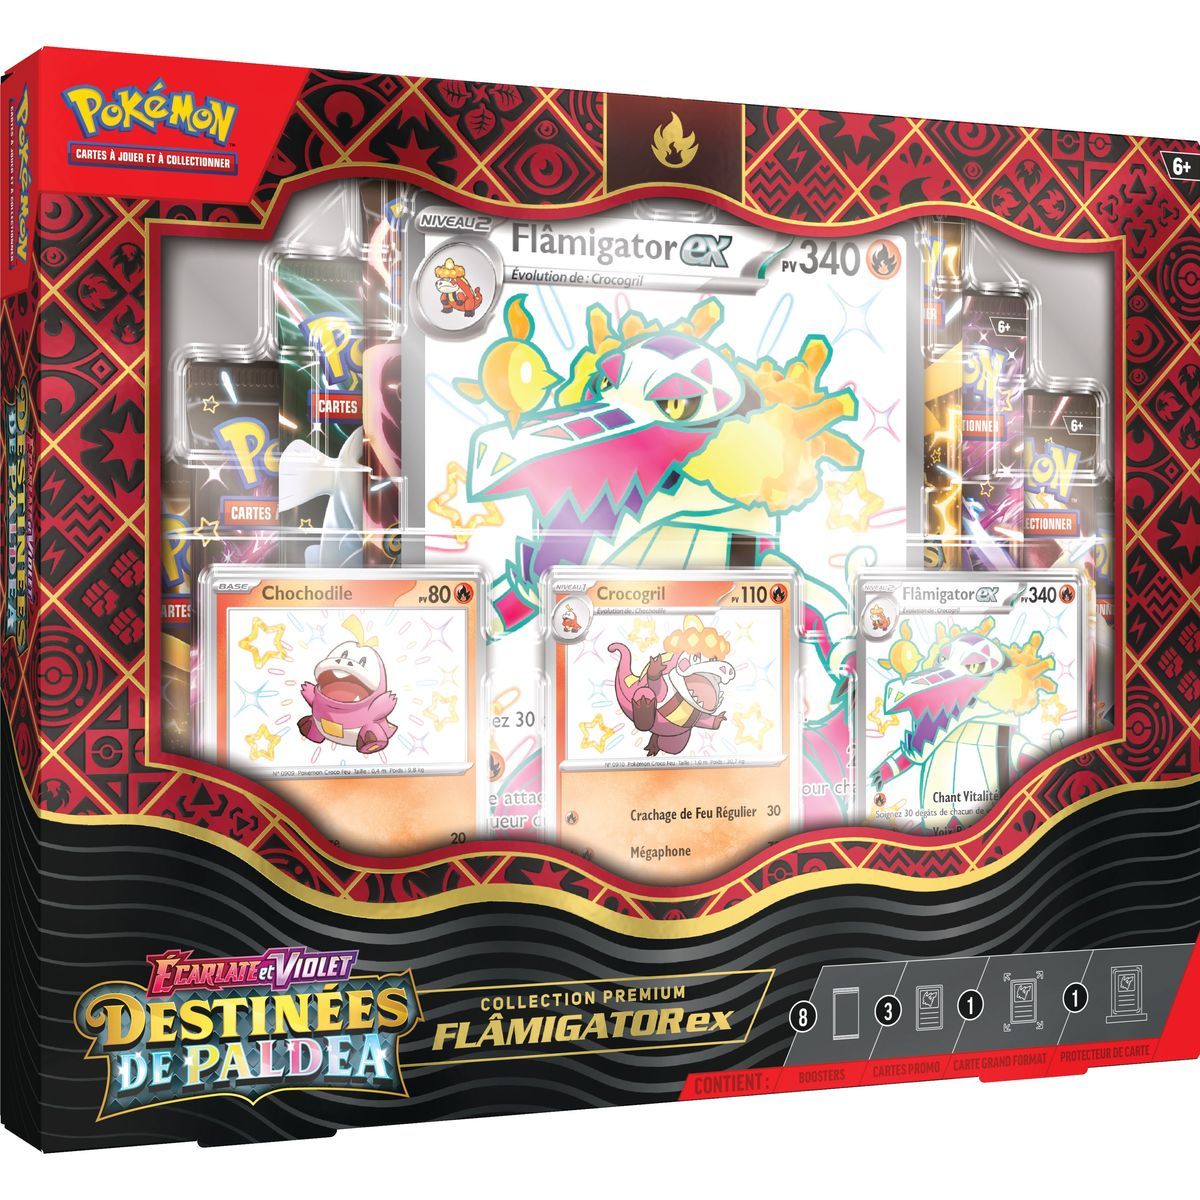 Pokémon - Coffret Collection Écarlate et Violet : Destinées de Paldea Flâmigator-EX -[SV04.5 - EV04.5] - FR